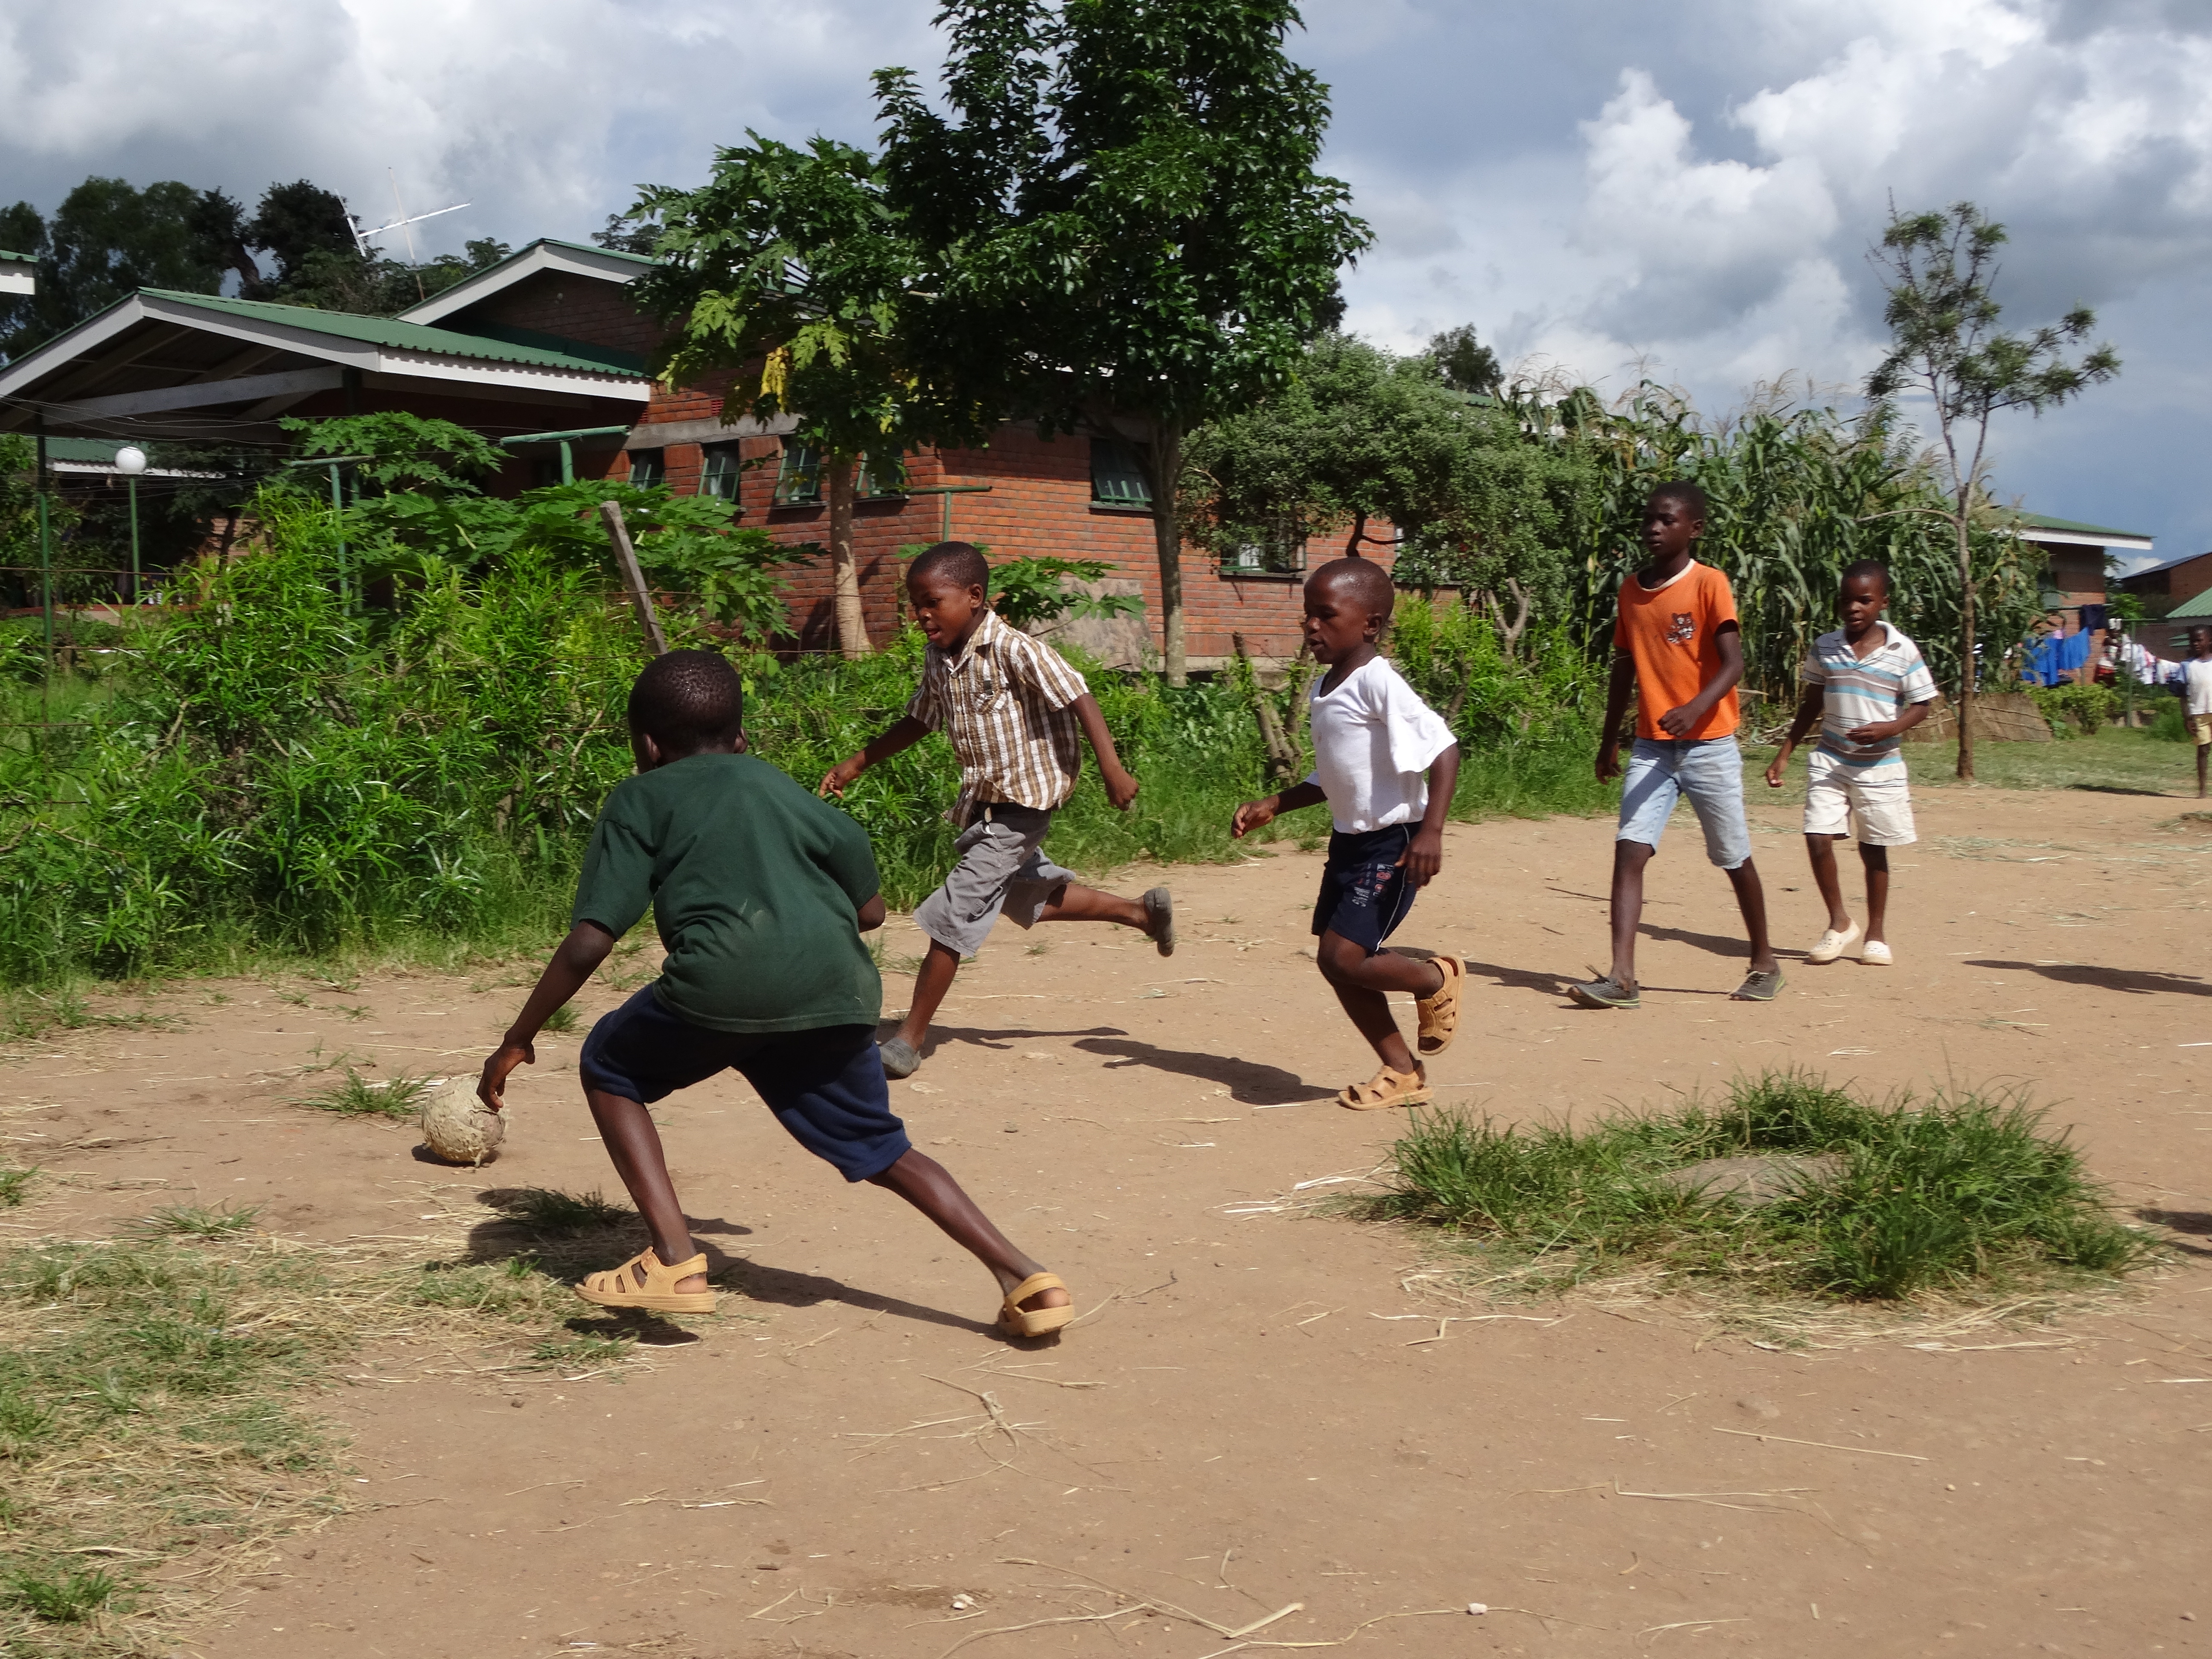 Barna i barnebyen i Blantyre liker å spille fotball! Foto: Christine Wiik